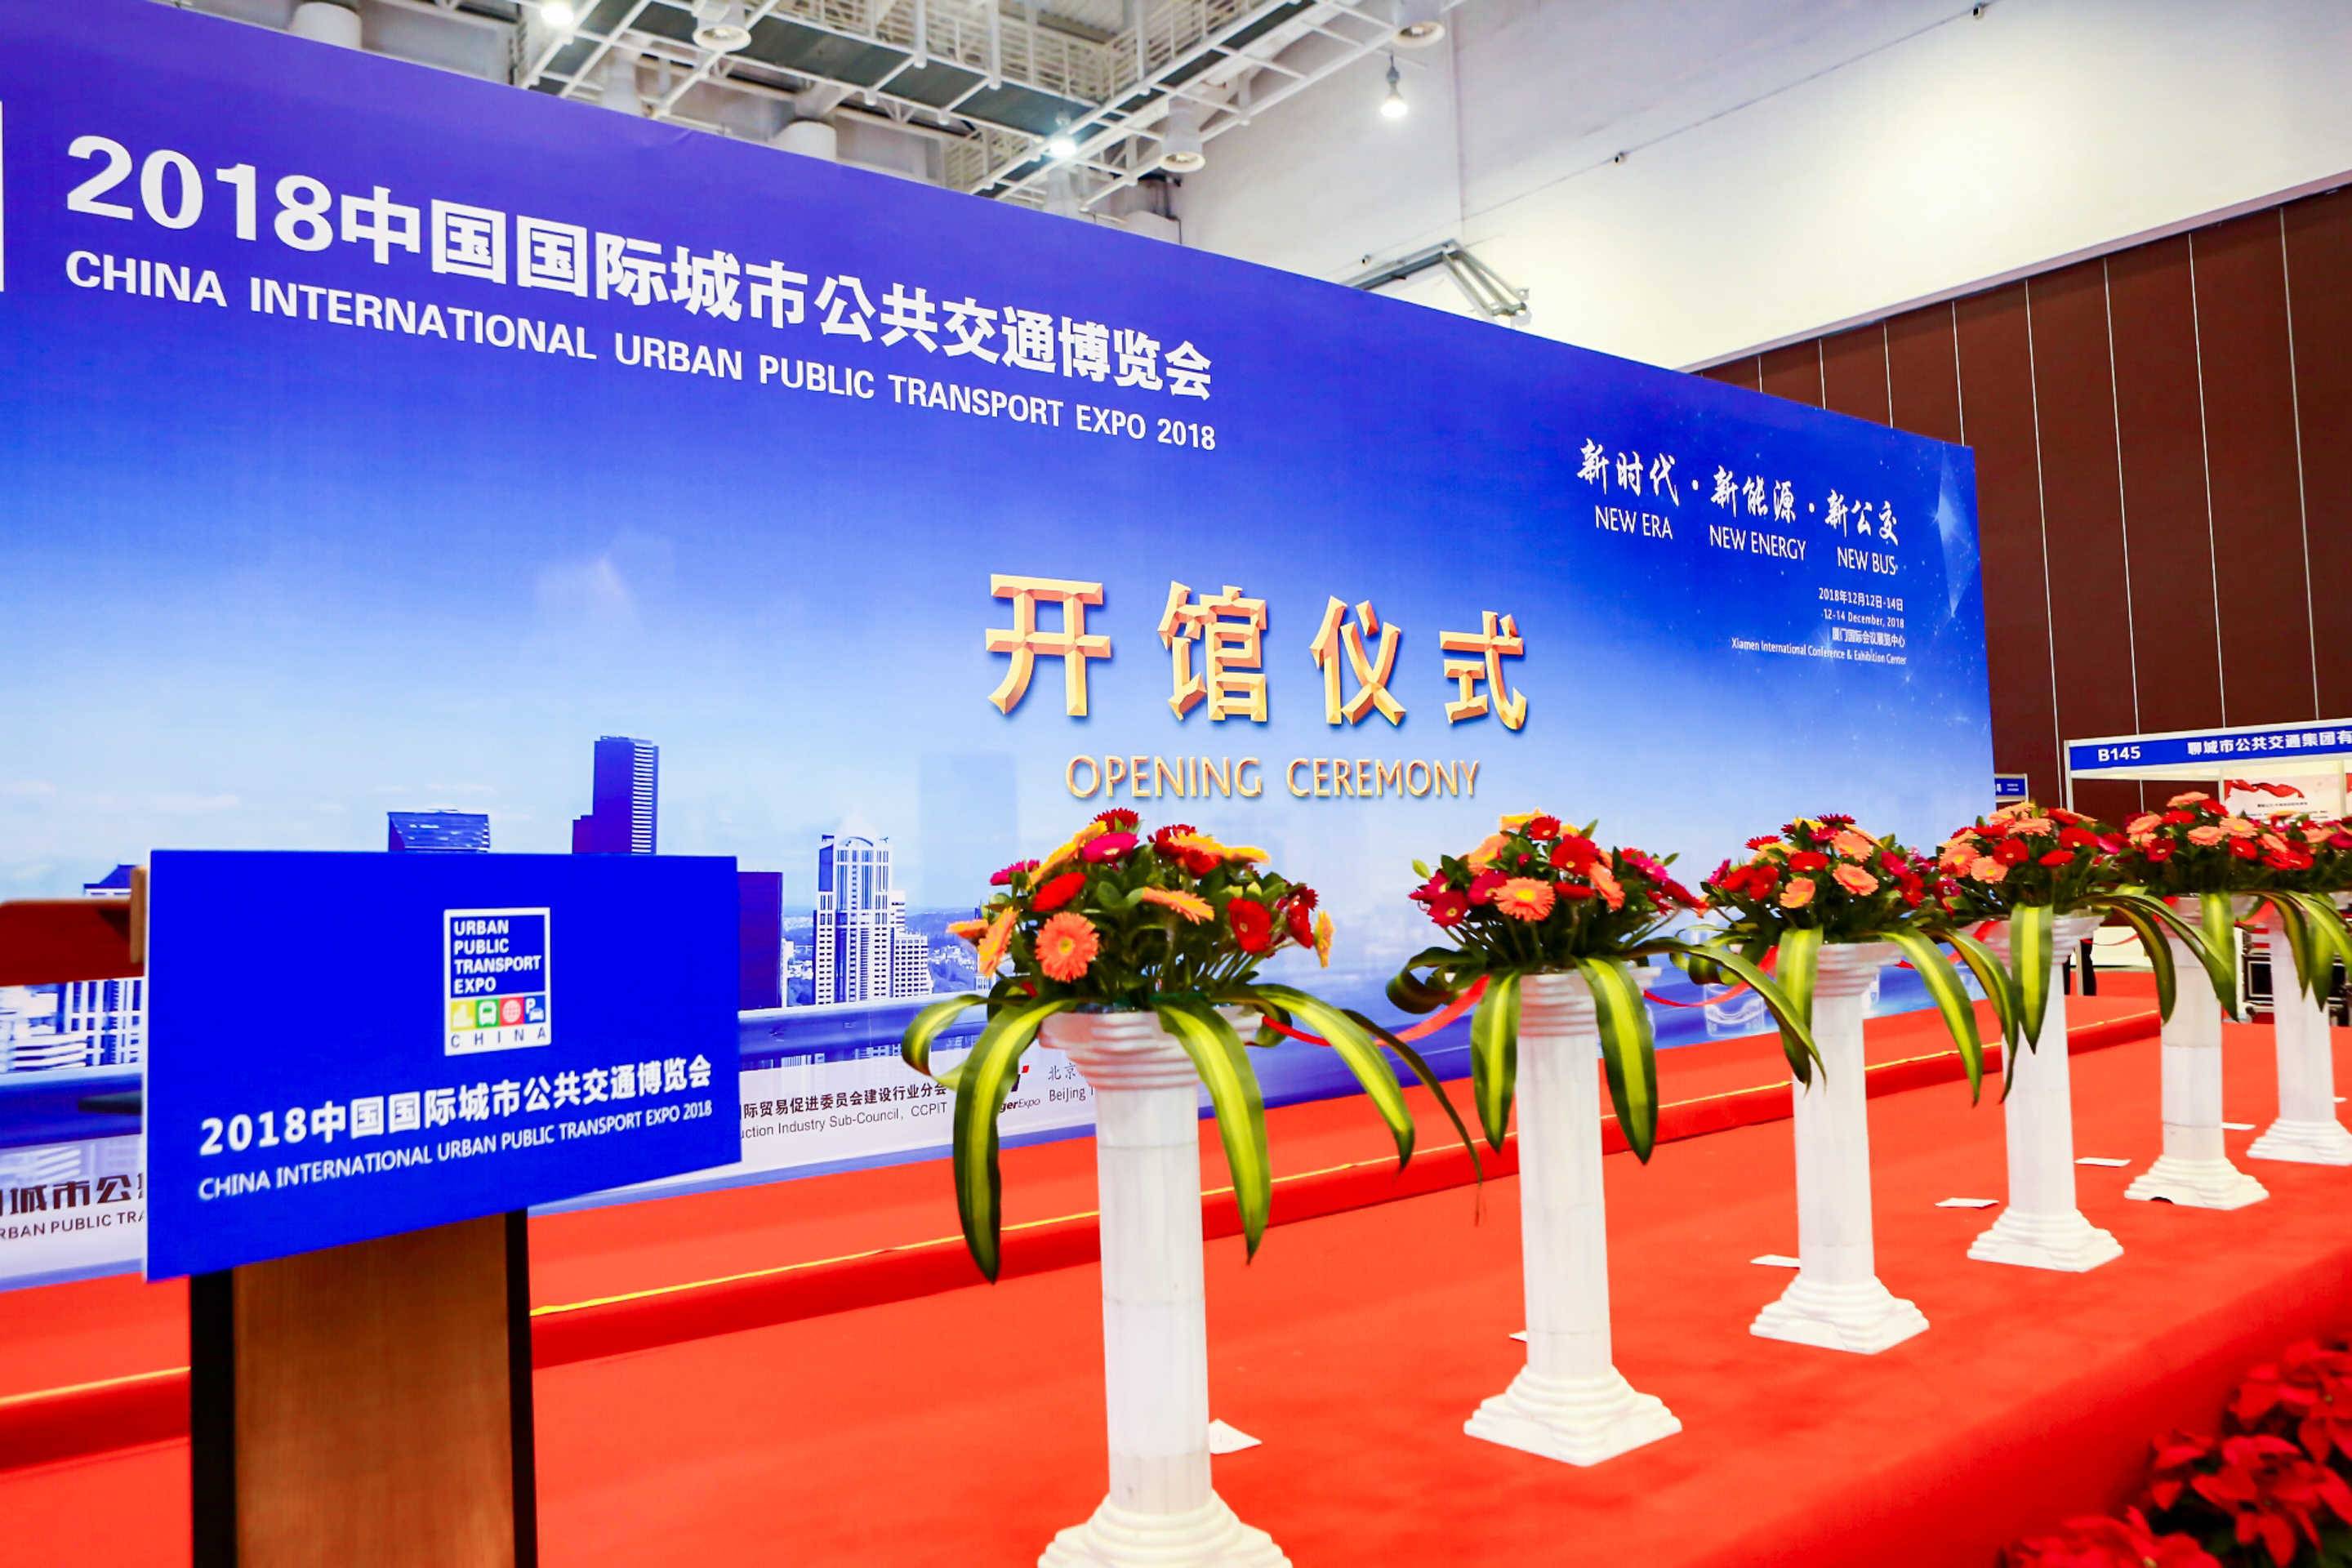 2018中国国际城市公共交通博览会将在厦门国际会展中心举办